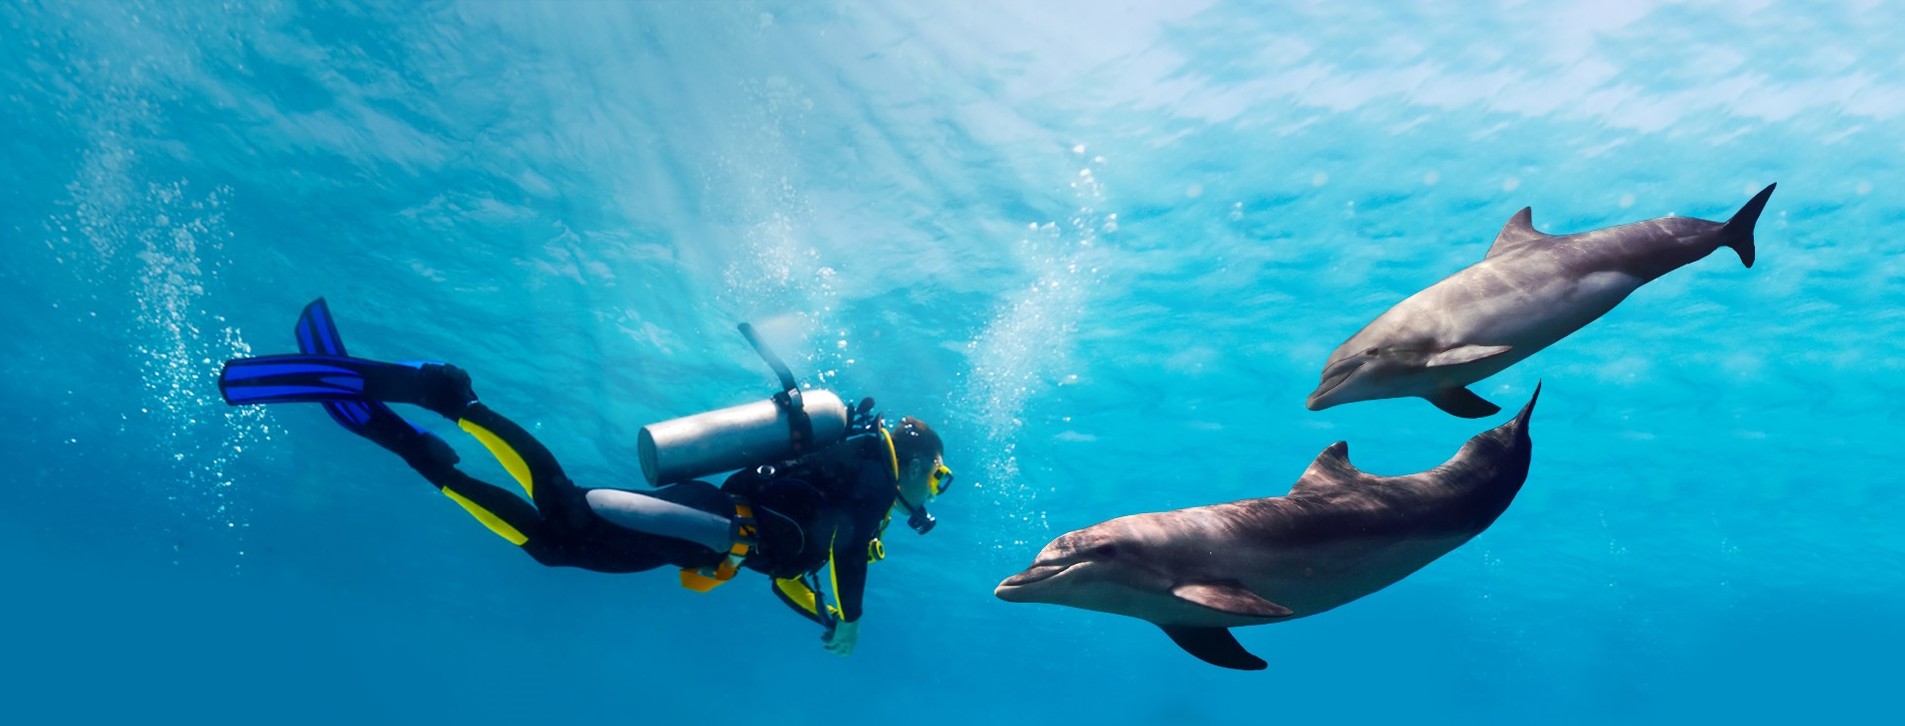 Фото 1 - Дайвинг с дельфинами